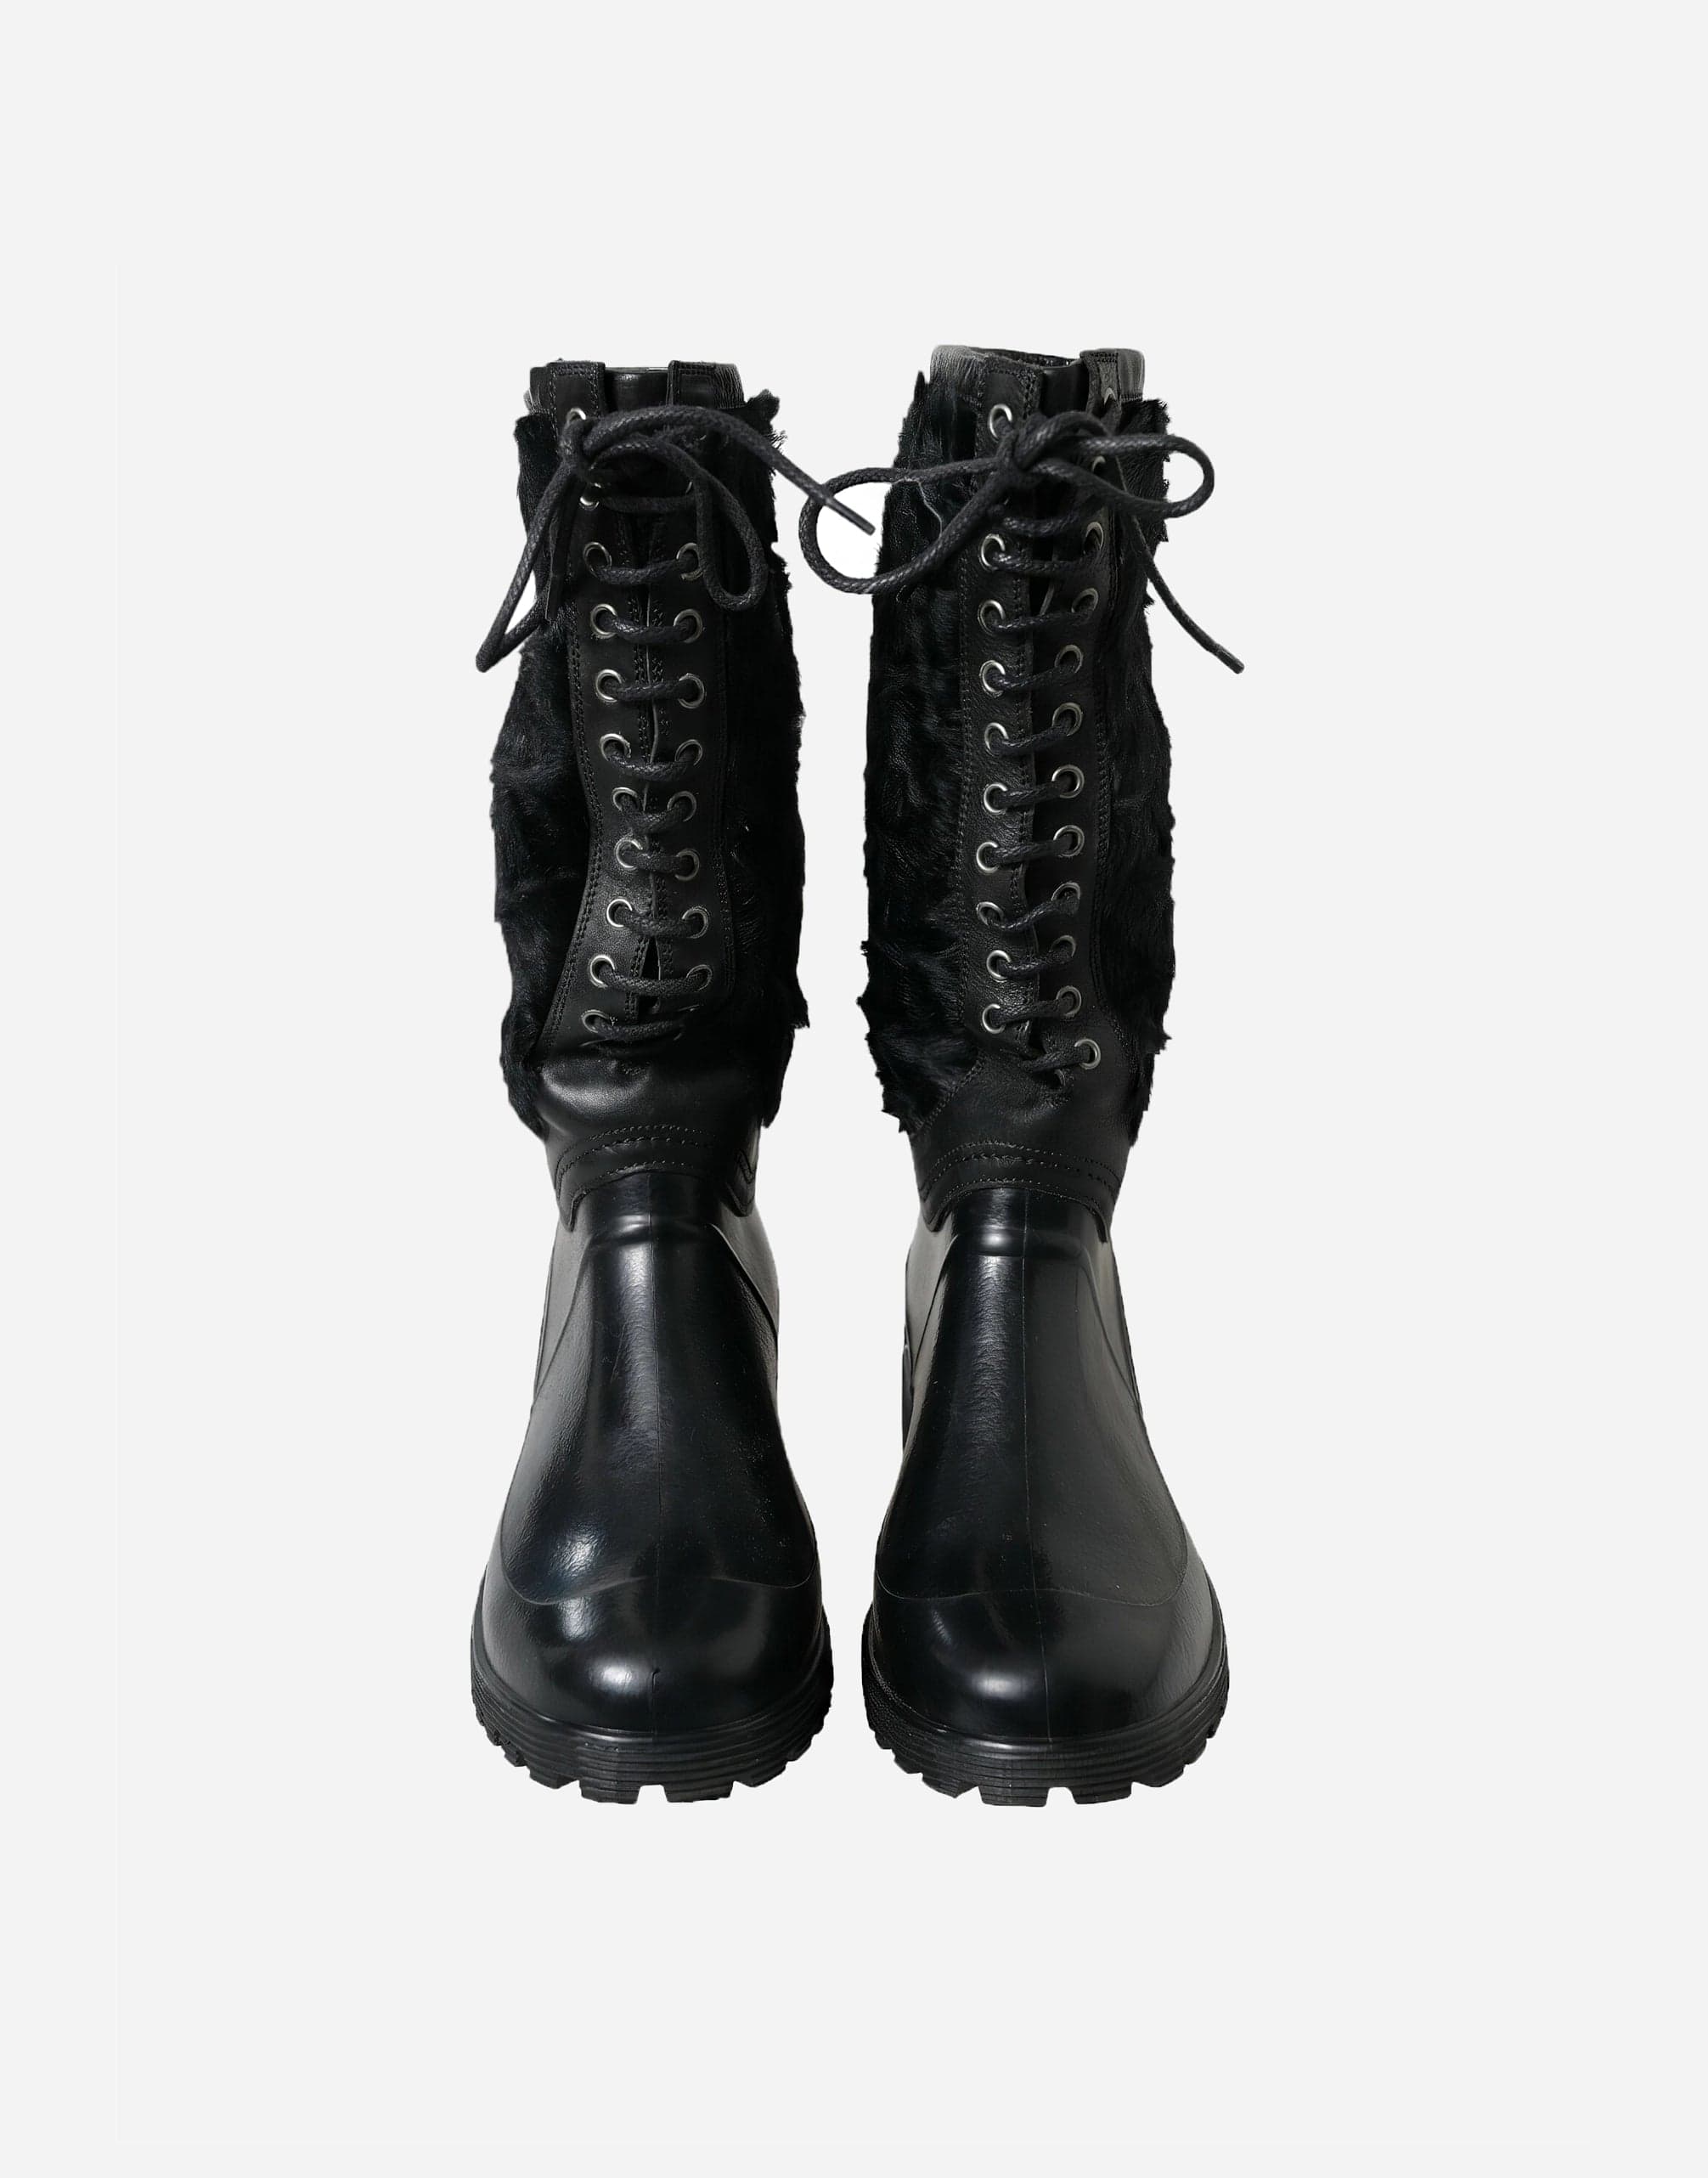 Dolce & Gabbana Shearling Rain Boots